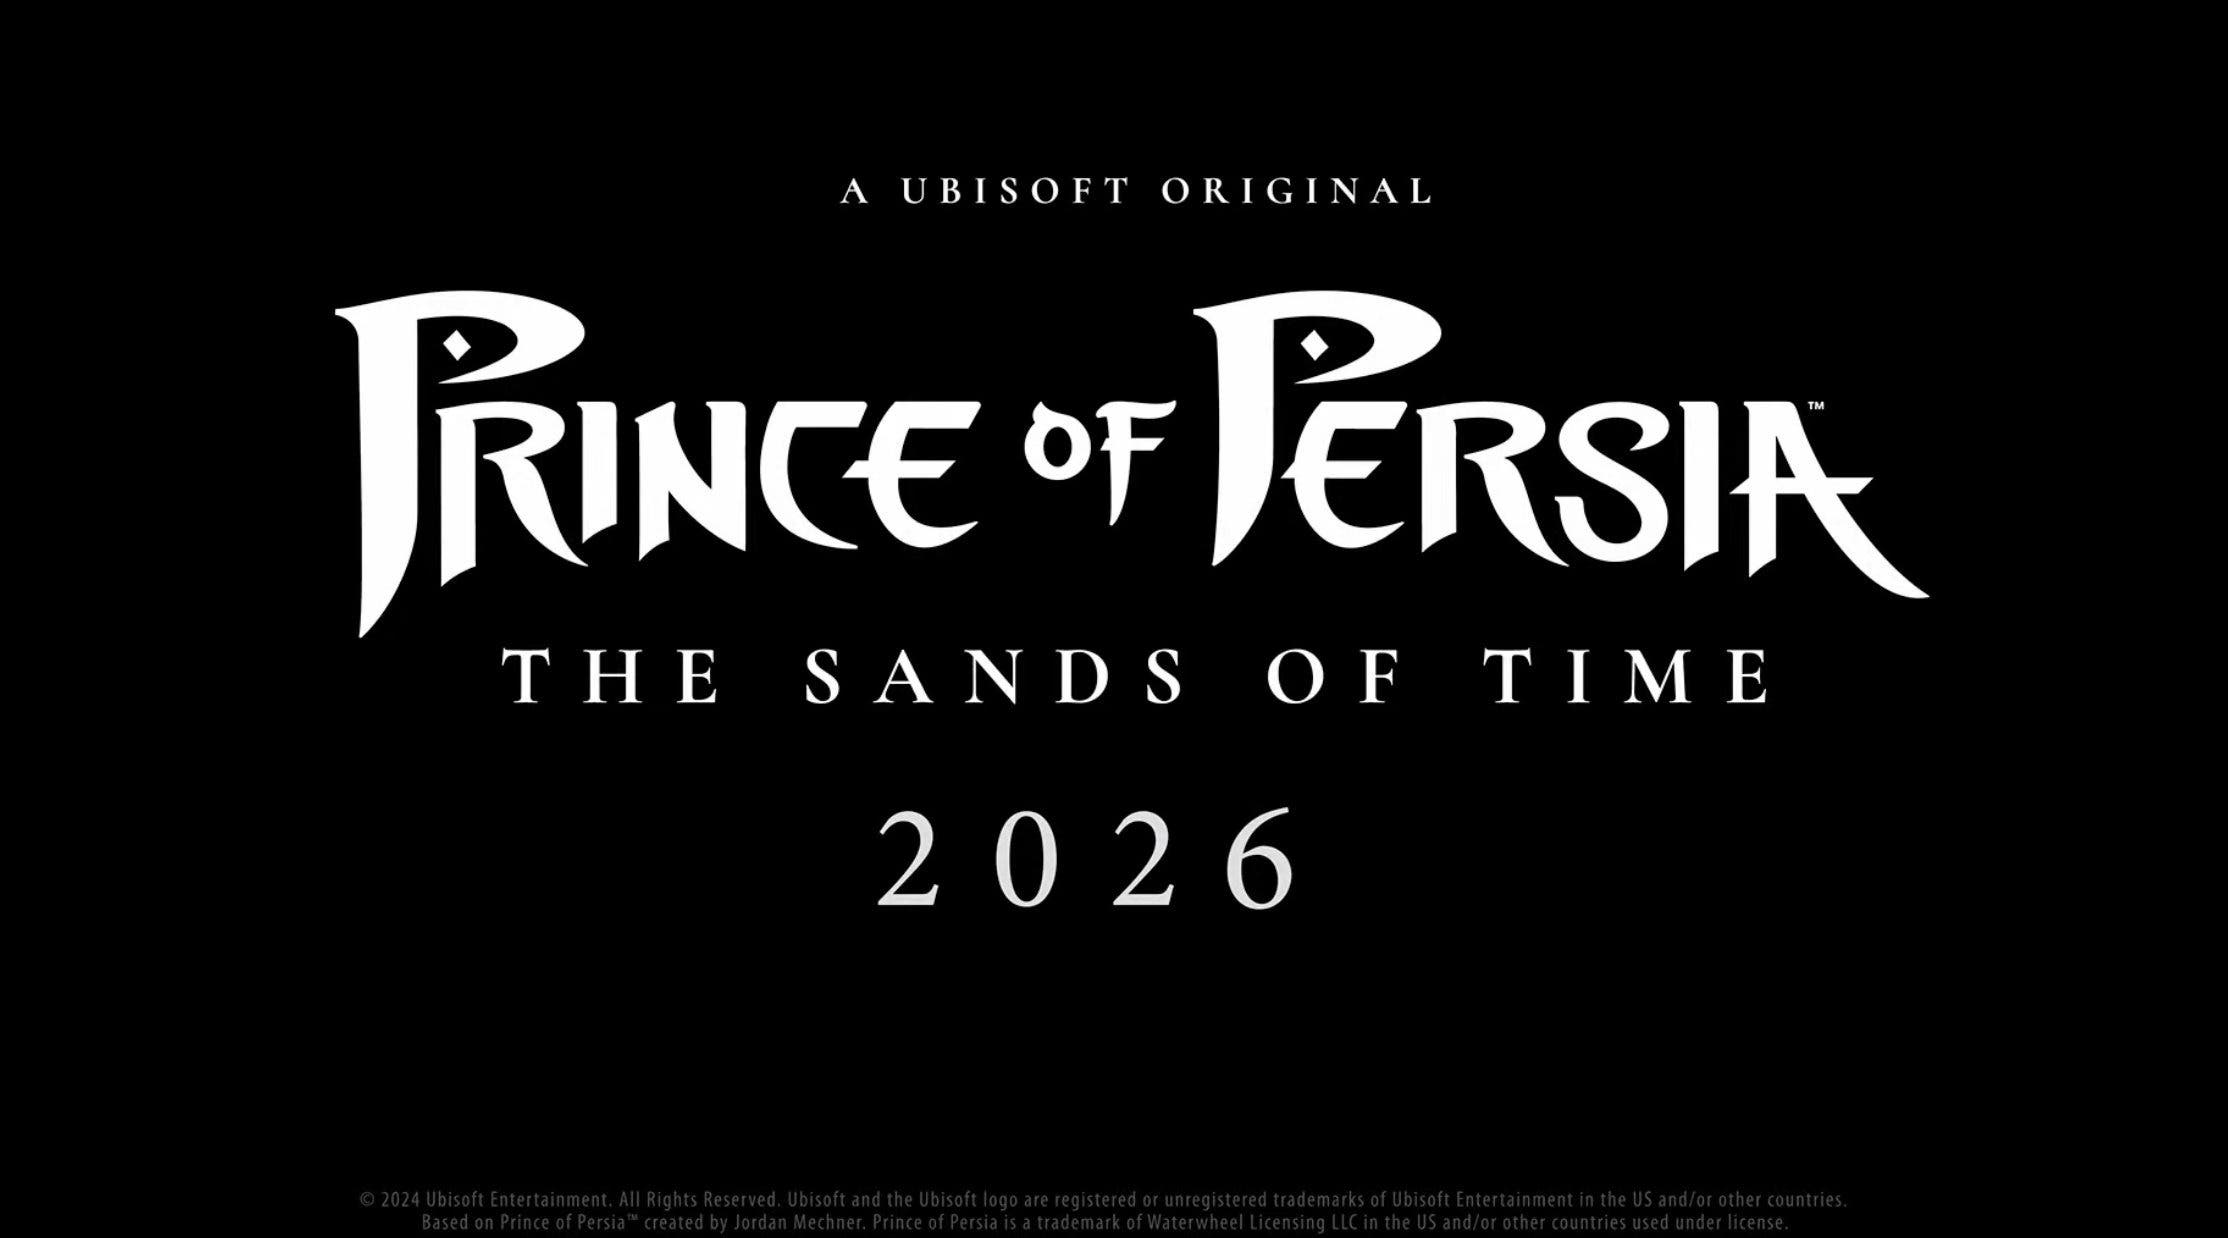 El remake de Prince of Persia: The Sands of Time se lanza en 2026